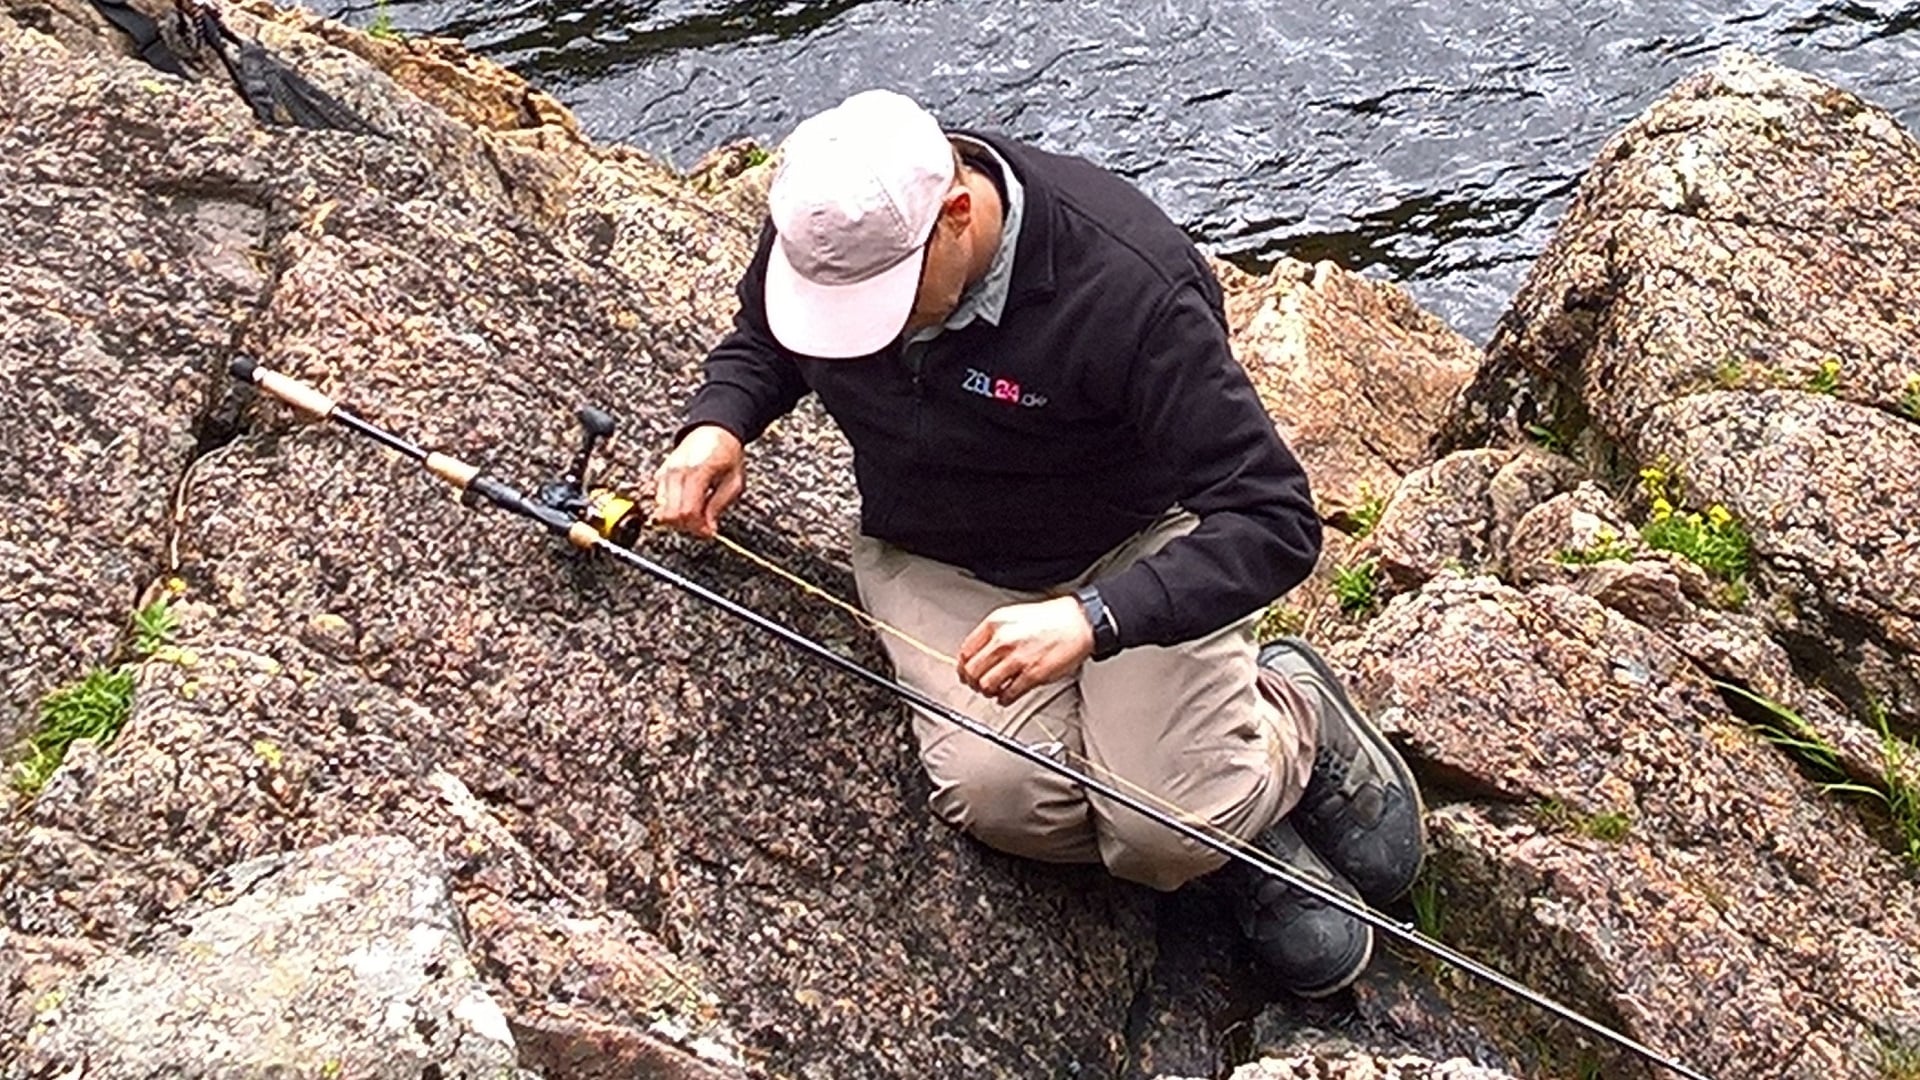 Ein Angler sitzt auf dem felsigen Ufer eines Lachsflusses und untersucht den Zustand des Fluorocarbon-Vorfachs an seiner Angelrute.